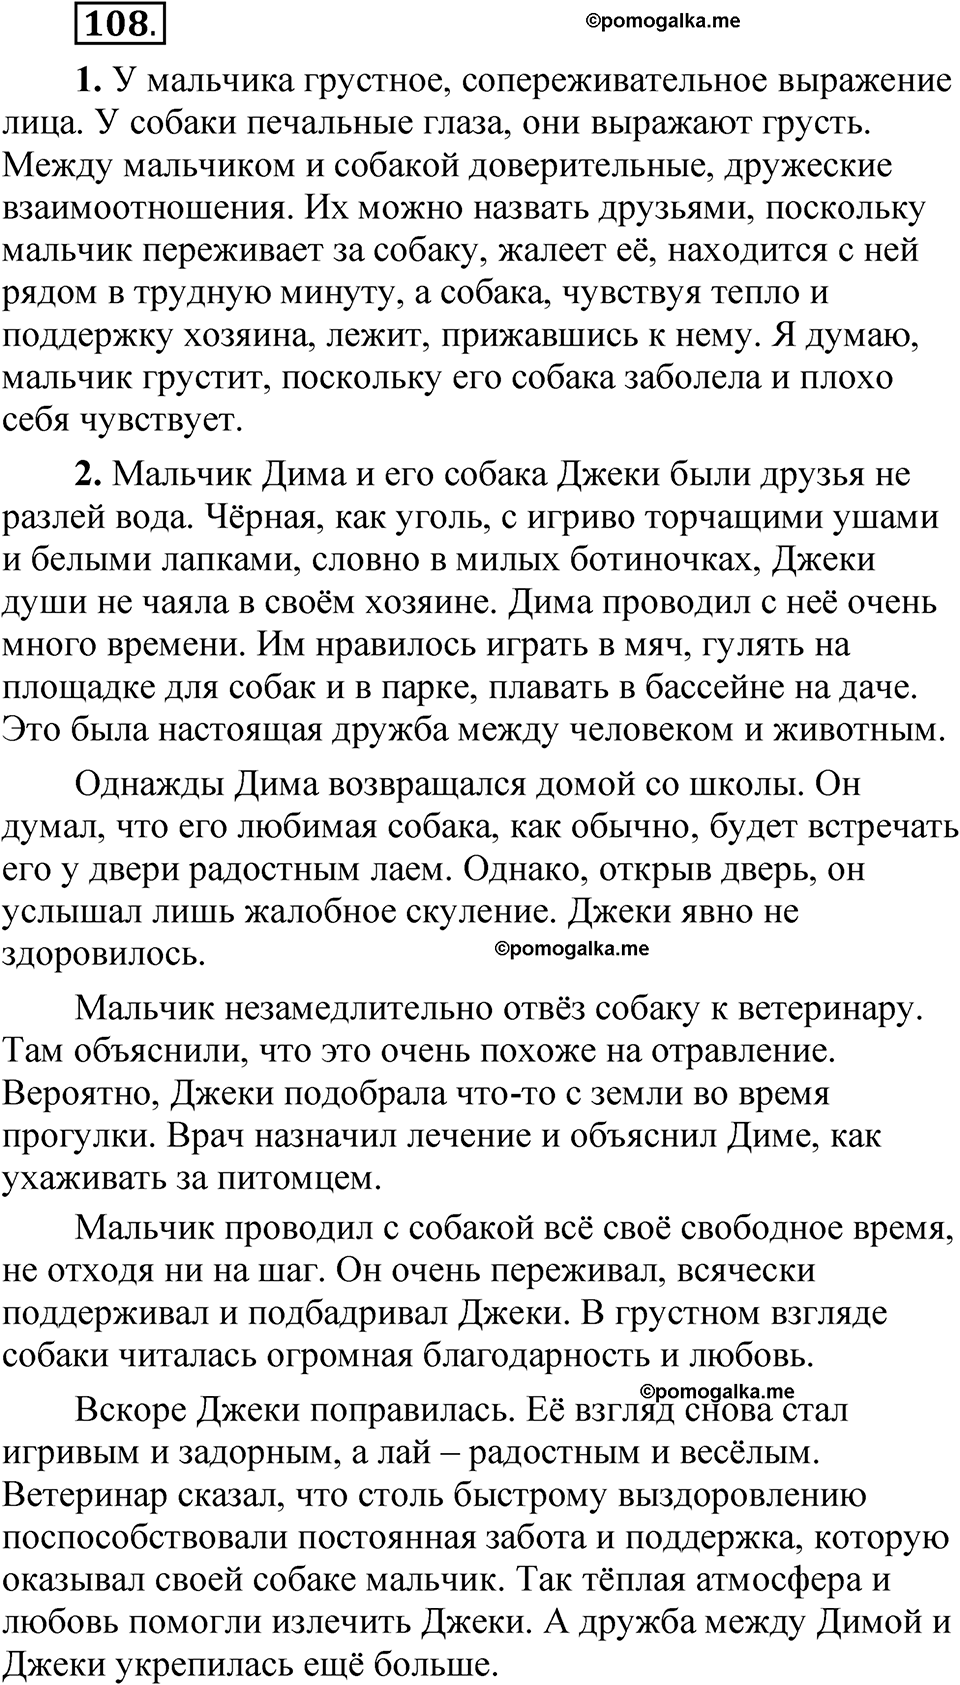 страница 87 упражнение 108 русский язык 5 класс Быстрова, Кибирева 1 часть 2021 год